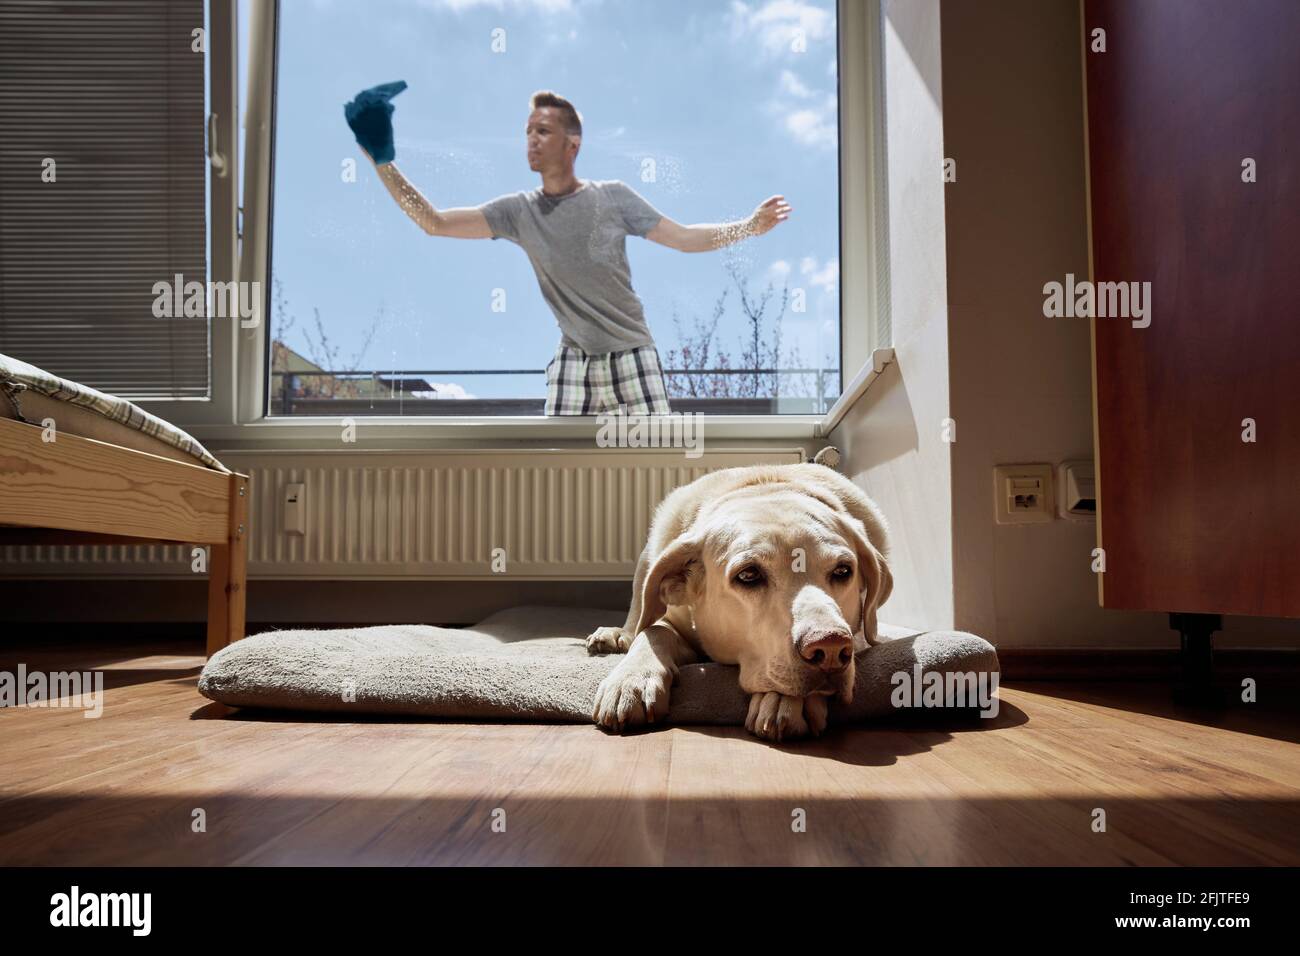 Der alte Hund ruht sich auf dem Heimtierbett aus und der Mann putzt das Fenster mit einem Lappen zu Hause. Themen Hausarbeit und Haushalt und das Leben mit Haustieren. Stockfoto